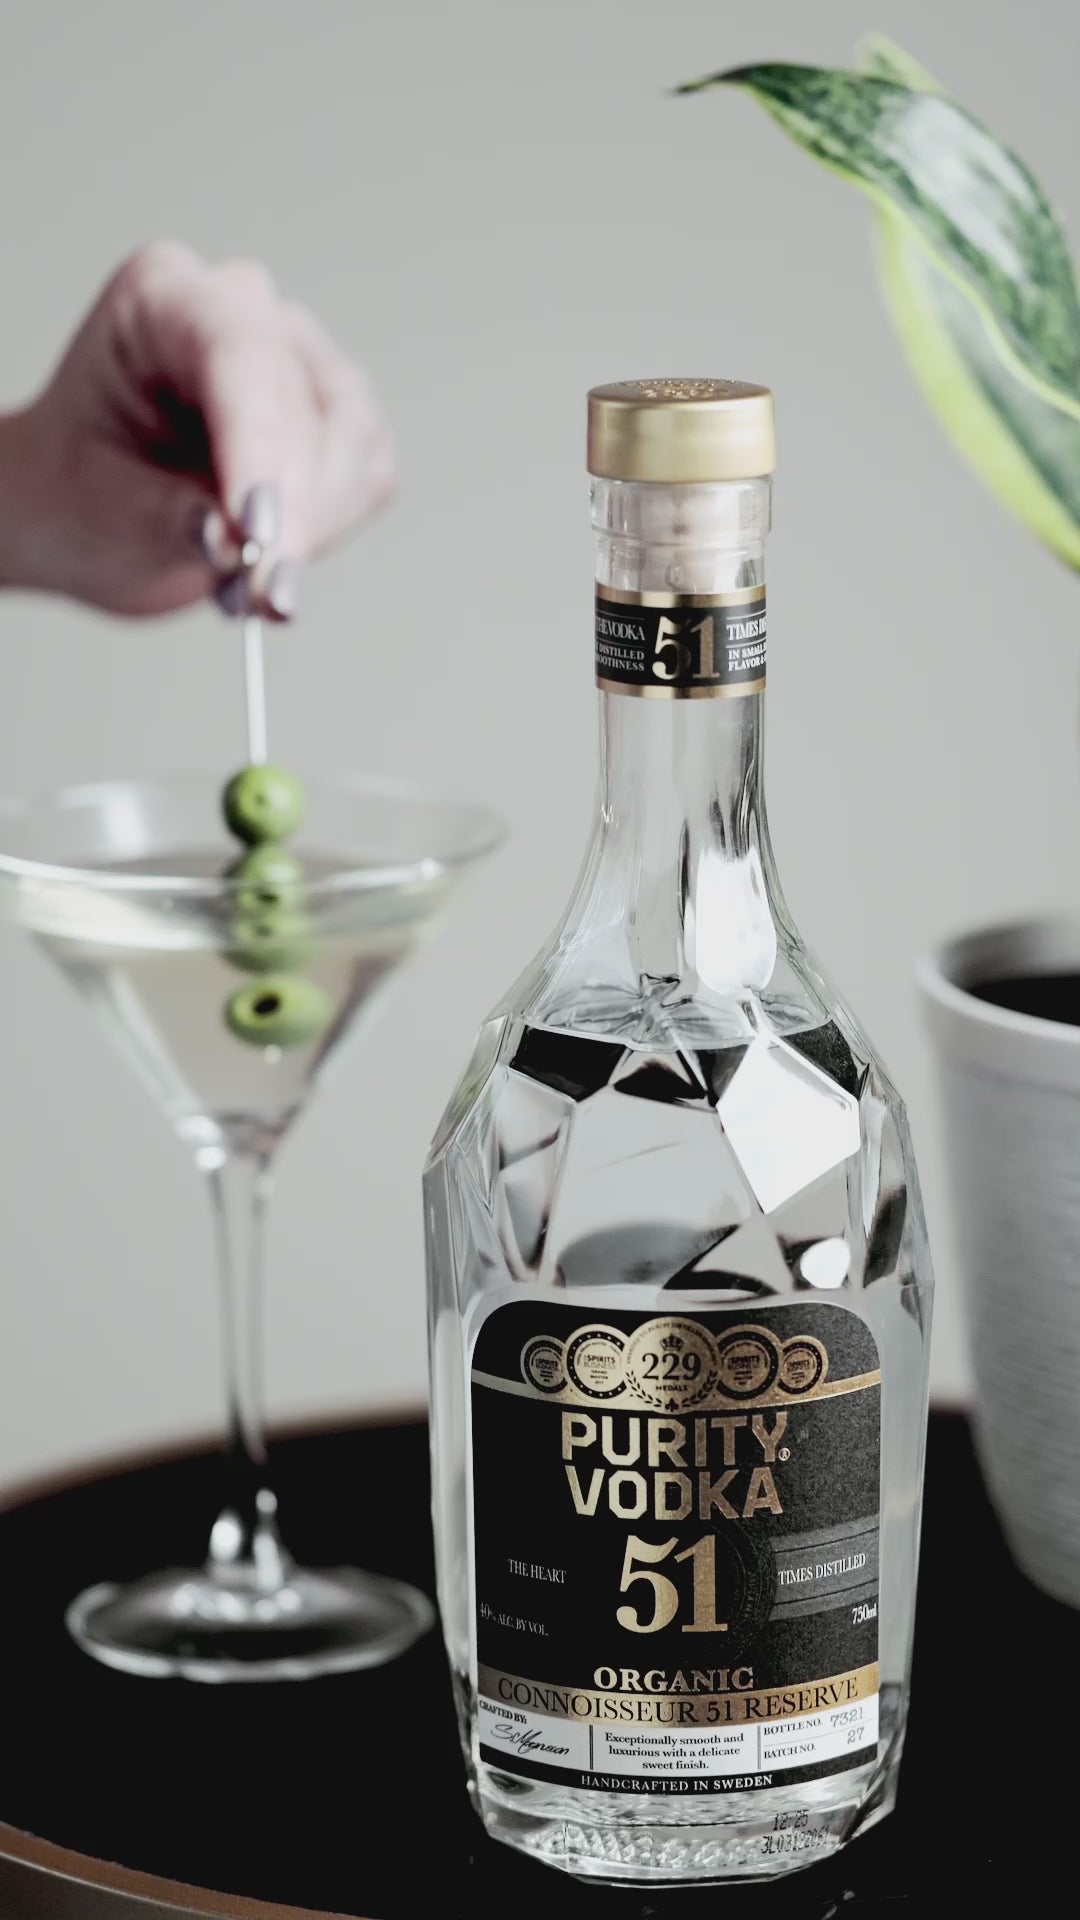 Purity Vodka Connoisseur 51 Reserve 1750 ml